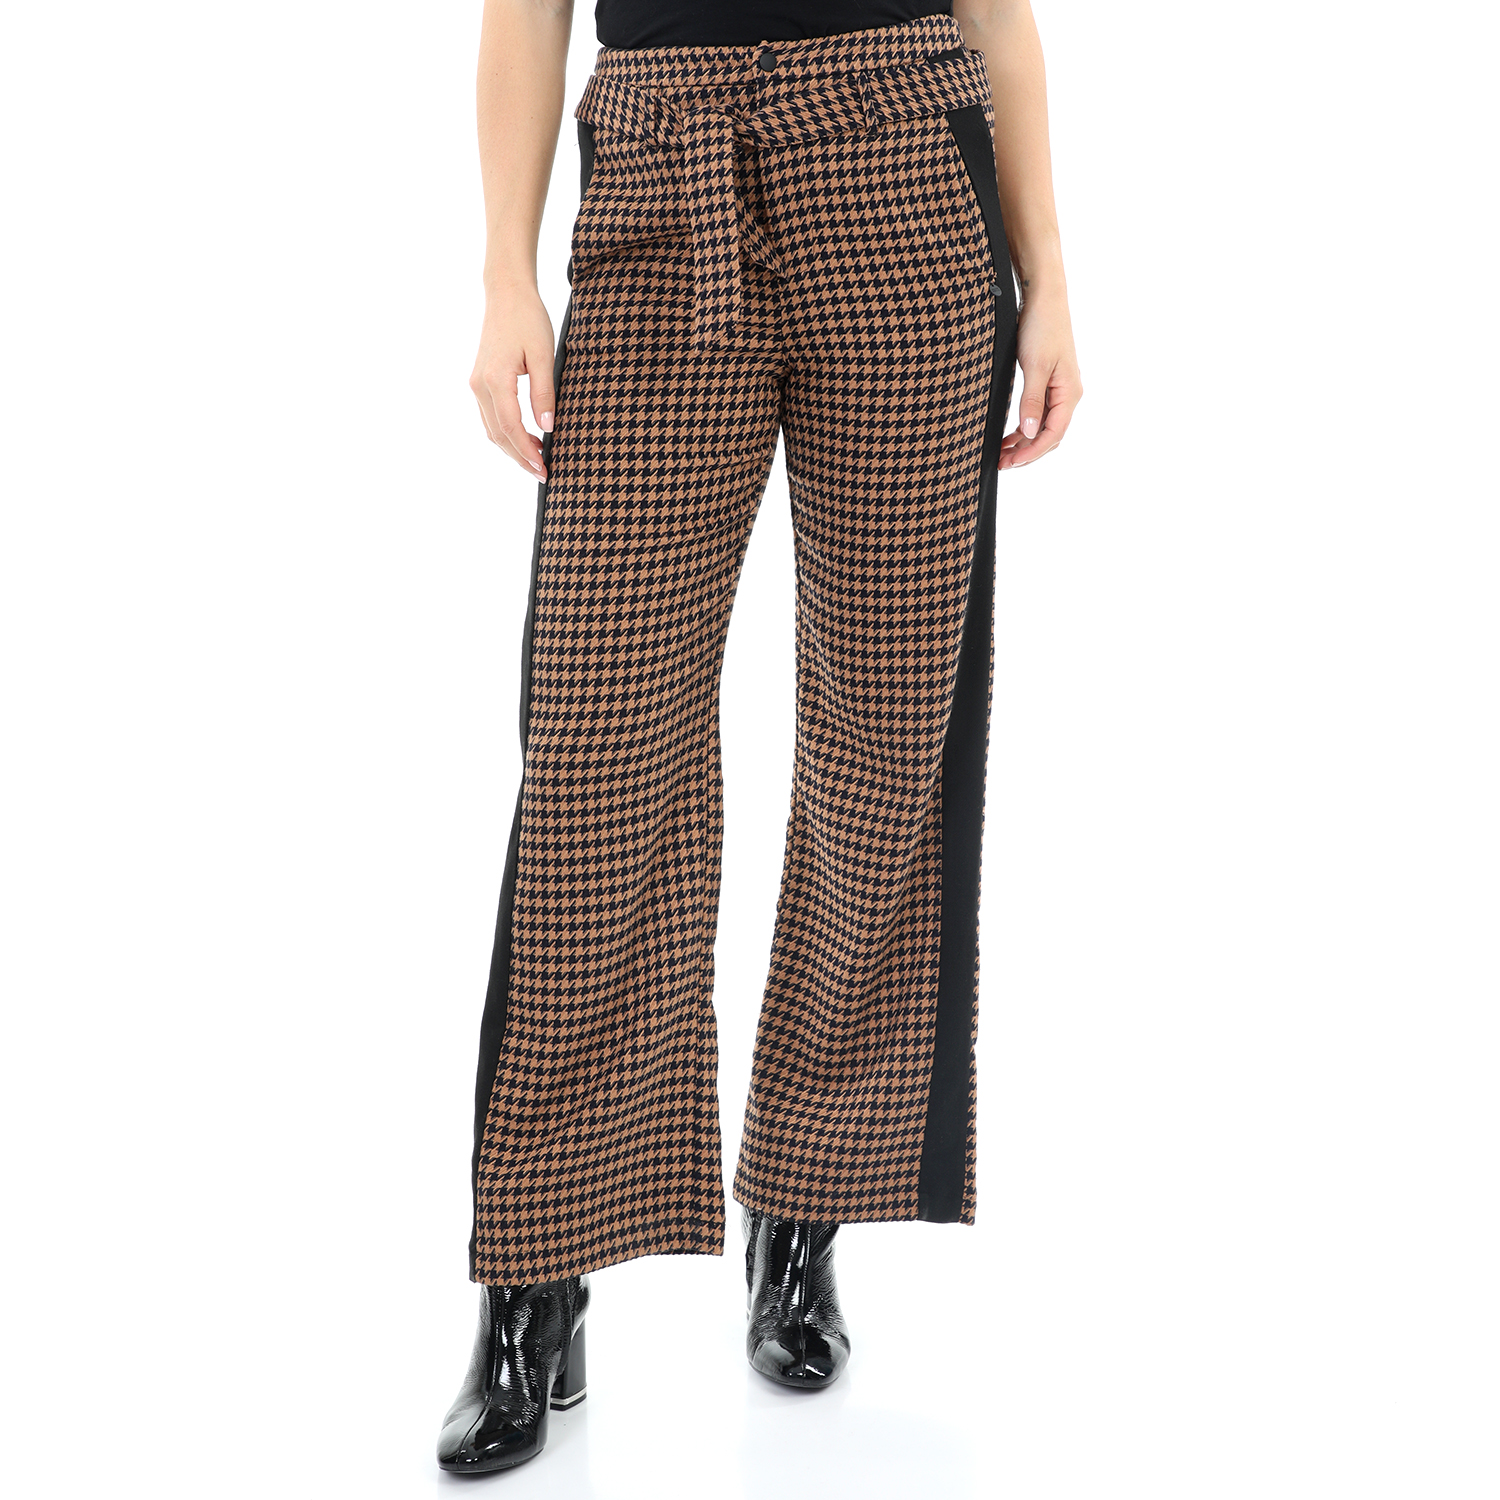 Γυναικεία/Ρούχα/Παντελόνια/Ισια Γραμμή SCOTCH & SODA - Γυναικείο παντελόνι SCOTCH & SODA καφέ μαύρο